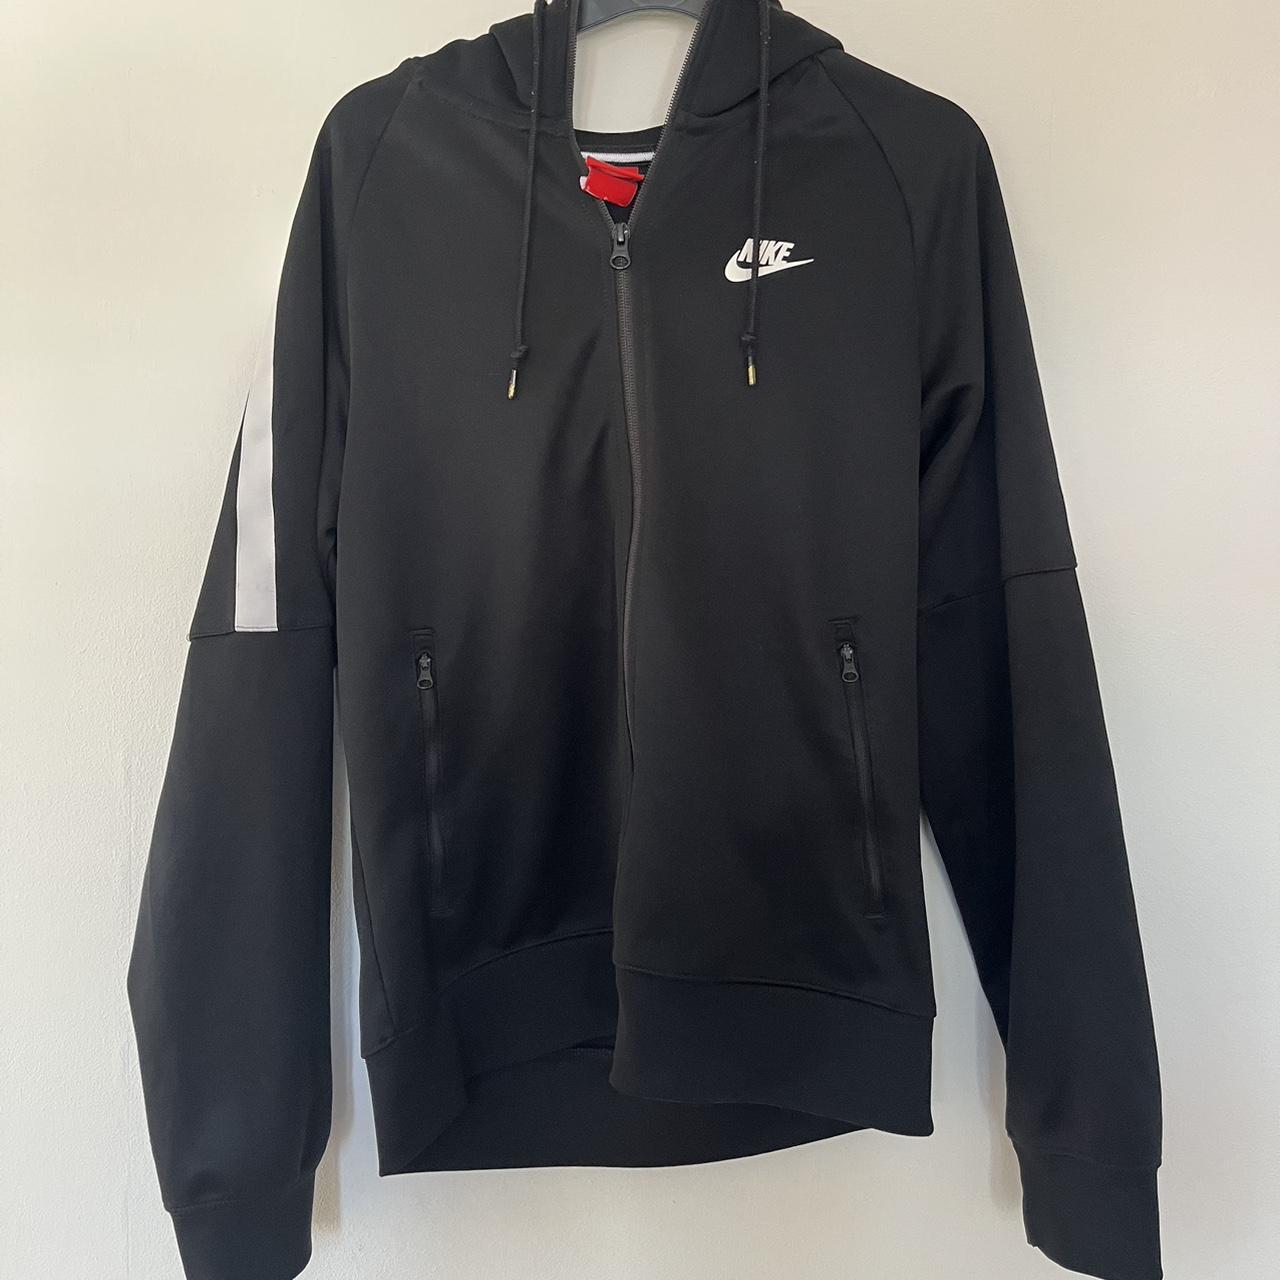 Men’s Nike zip hoodie - black. Small men’s, fits... - Depop